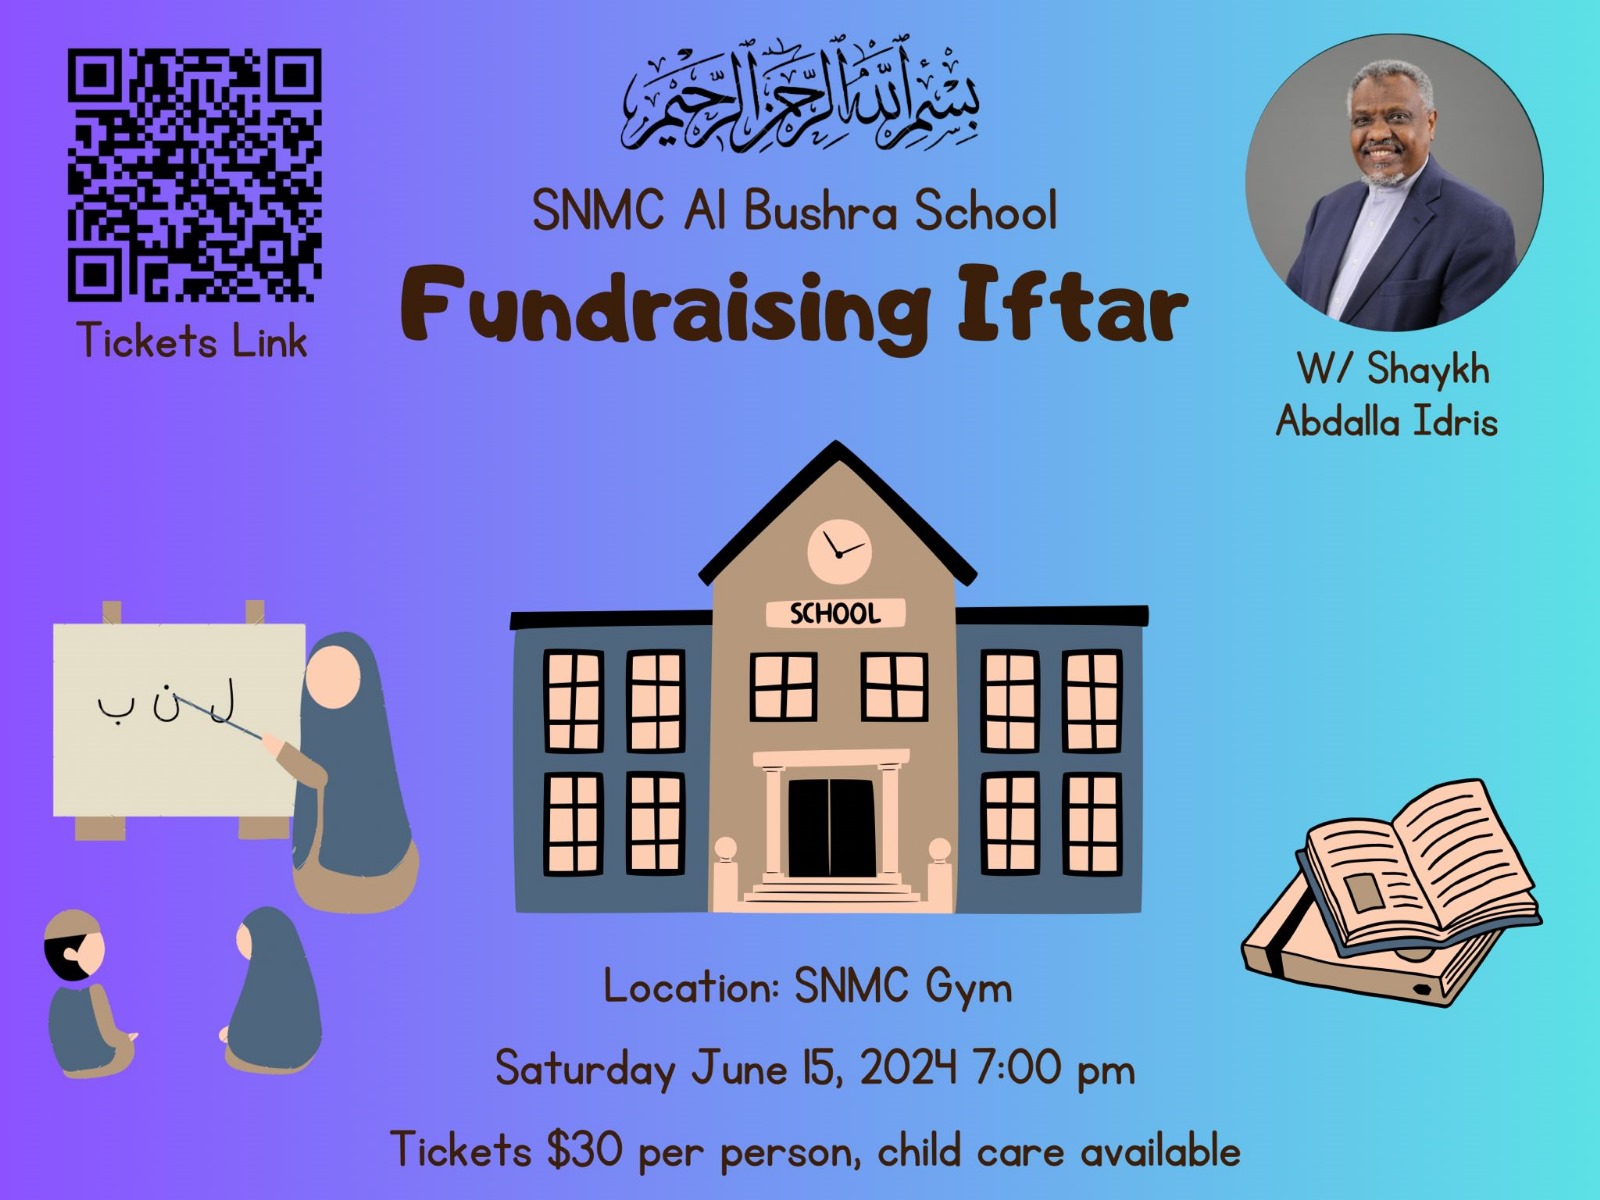 SNMC Al Bushra School Fundraising Iftar 